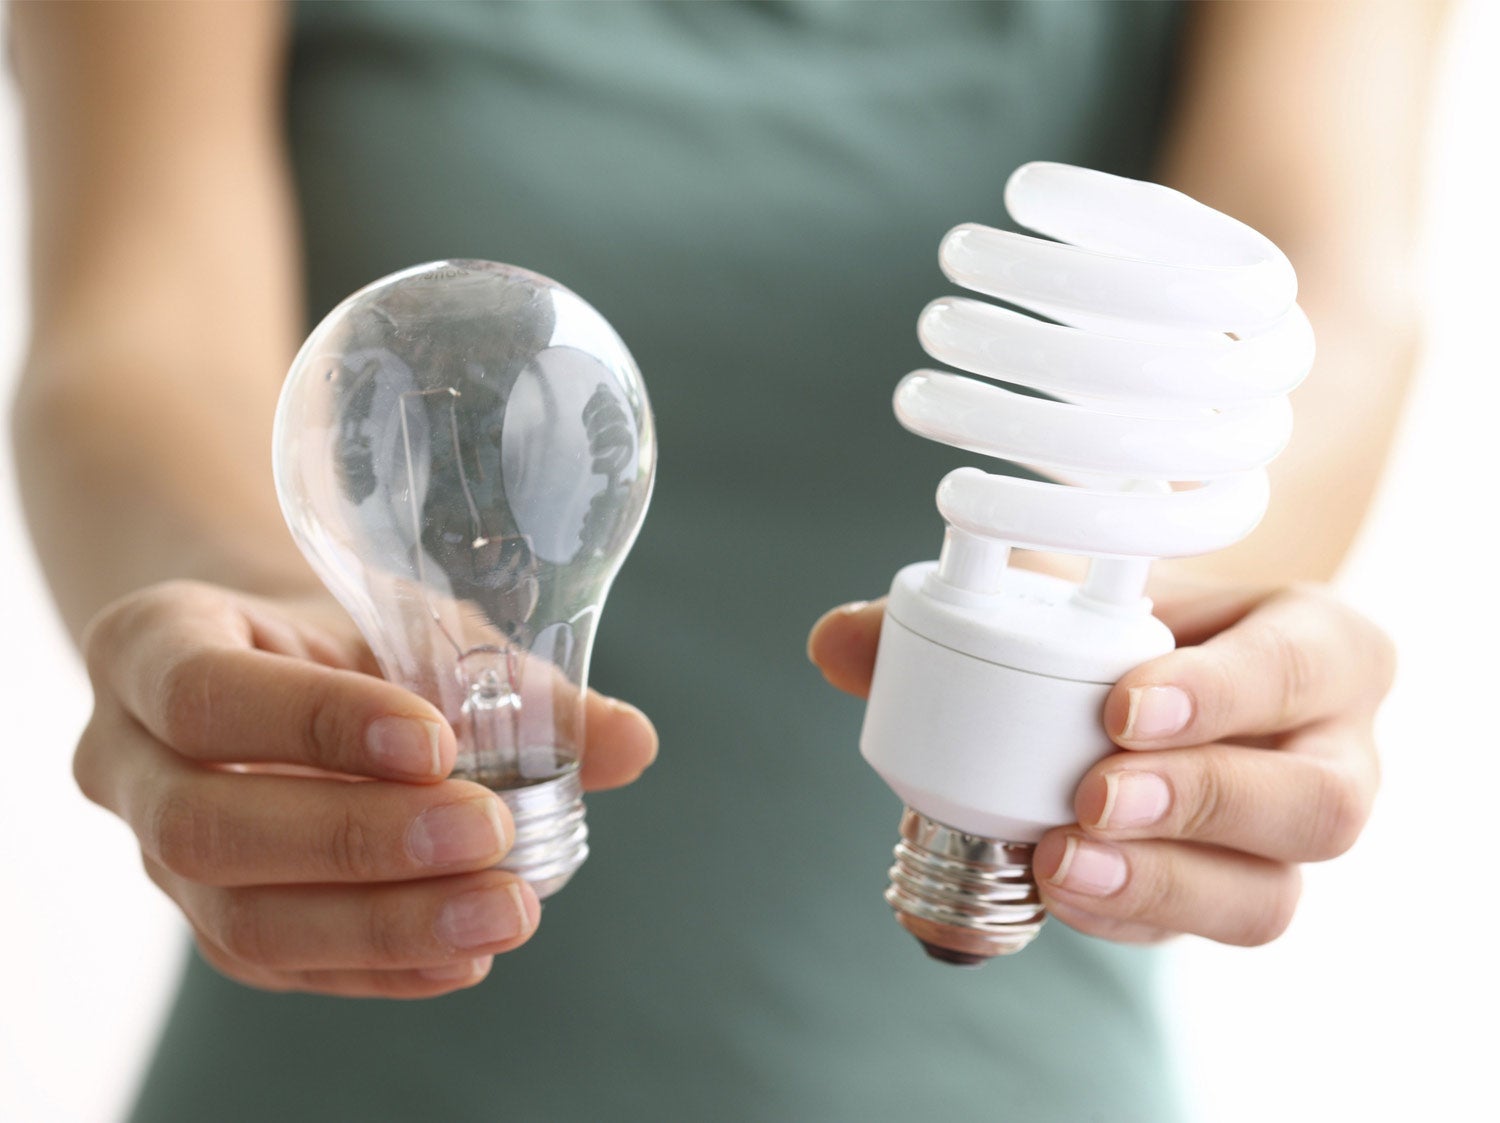 Qu'est-ce qu'une ampoule LED et comment elle fonctionne ?